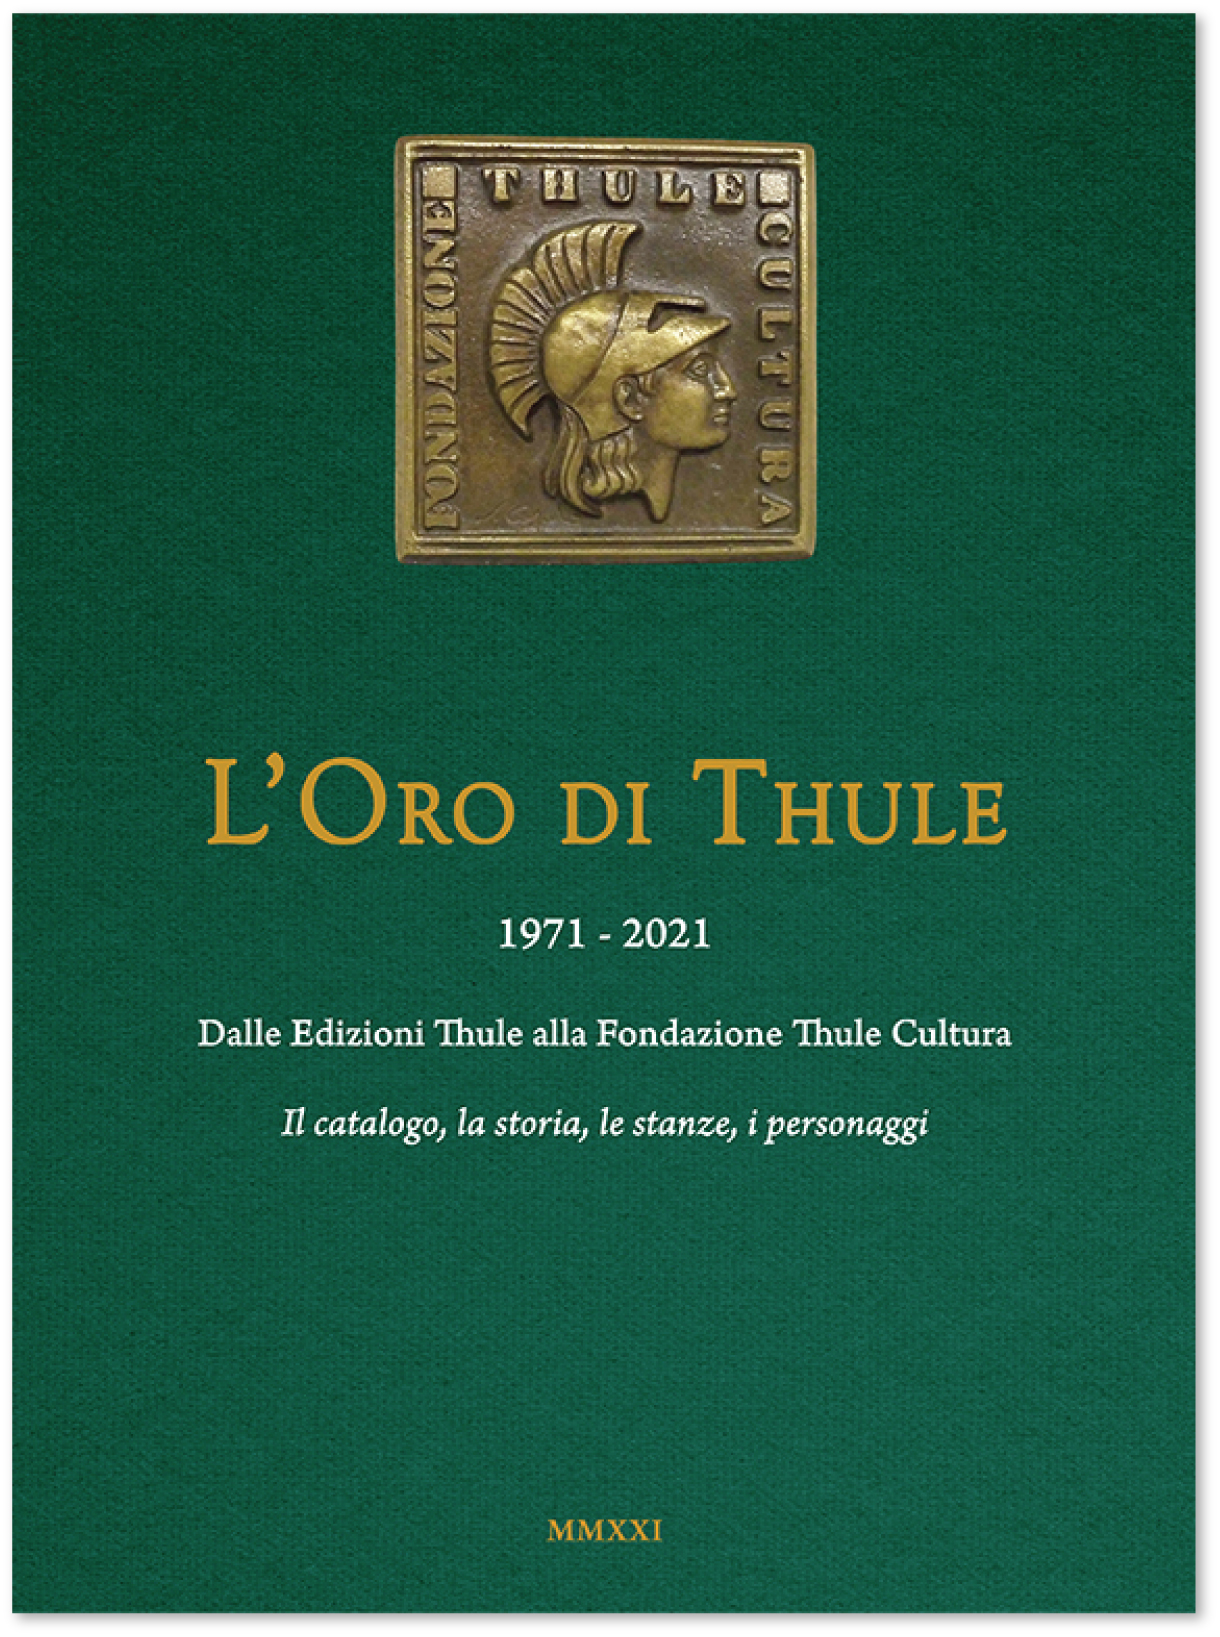 L'Oro di Thule 1971-2021: Dalle Edizioni Thule alla Fondazione Thule Cultura. 